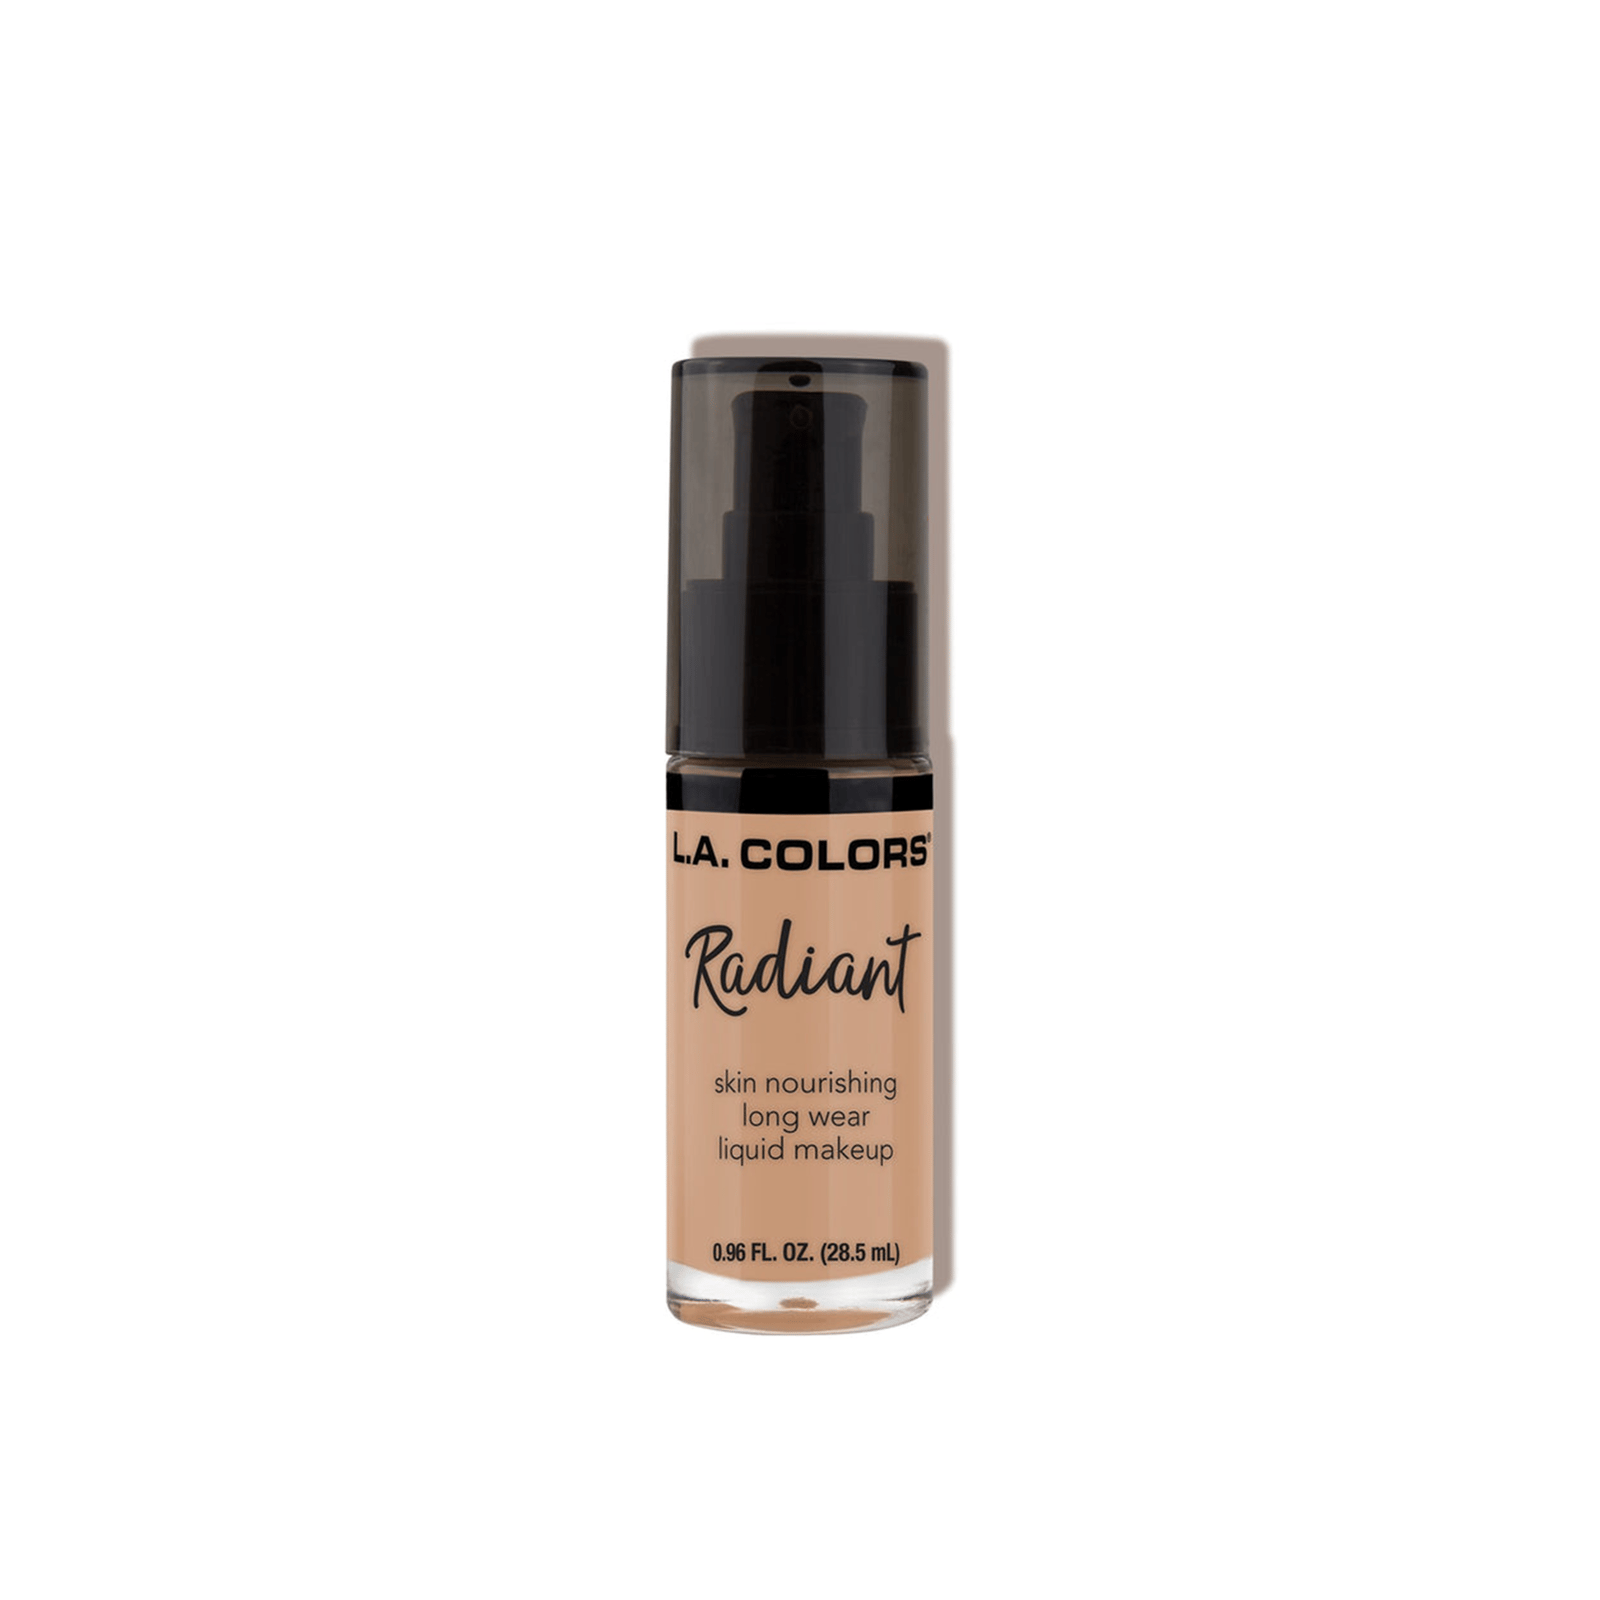 L.A. Colors Radiant Liquid Makeup Foundation CLM392 Medium Tan 28.5ml